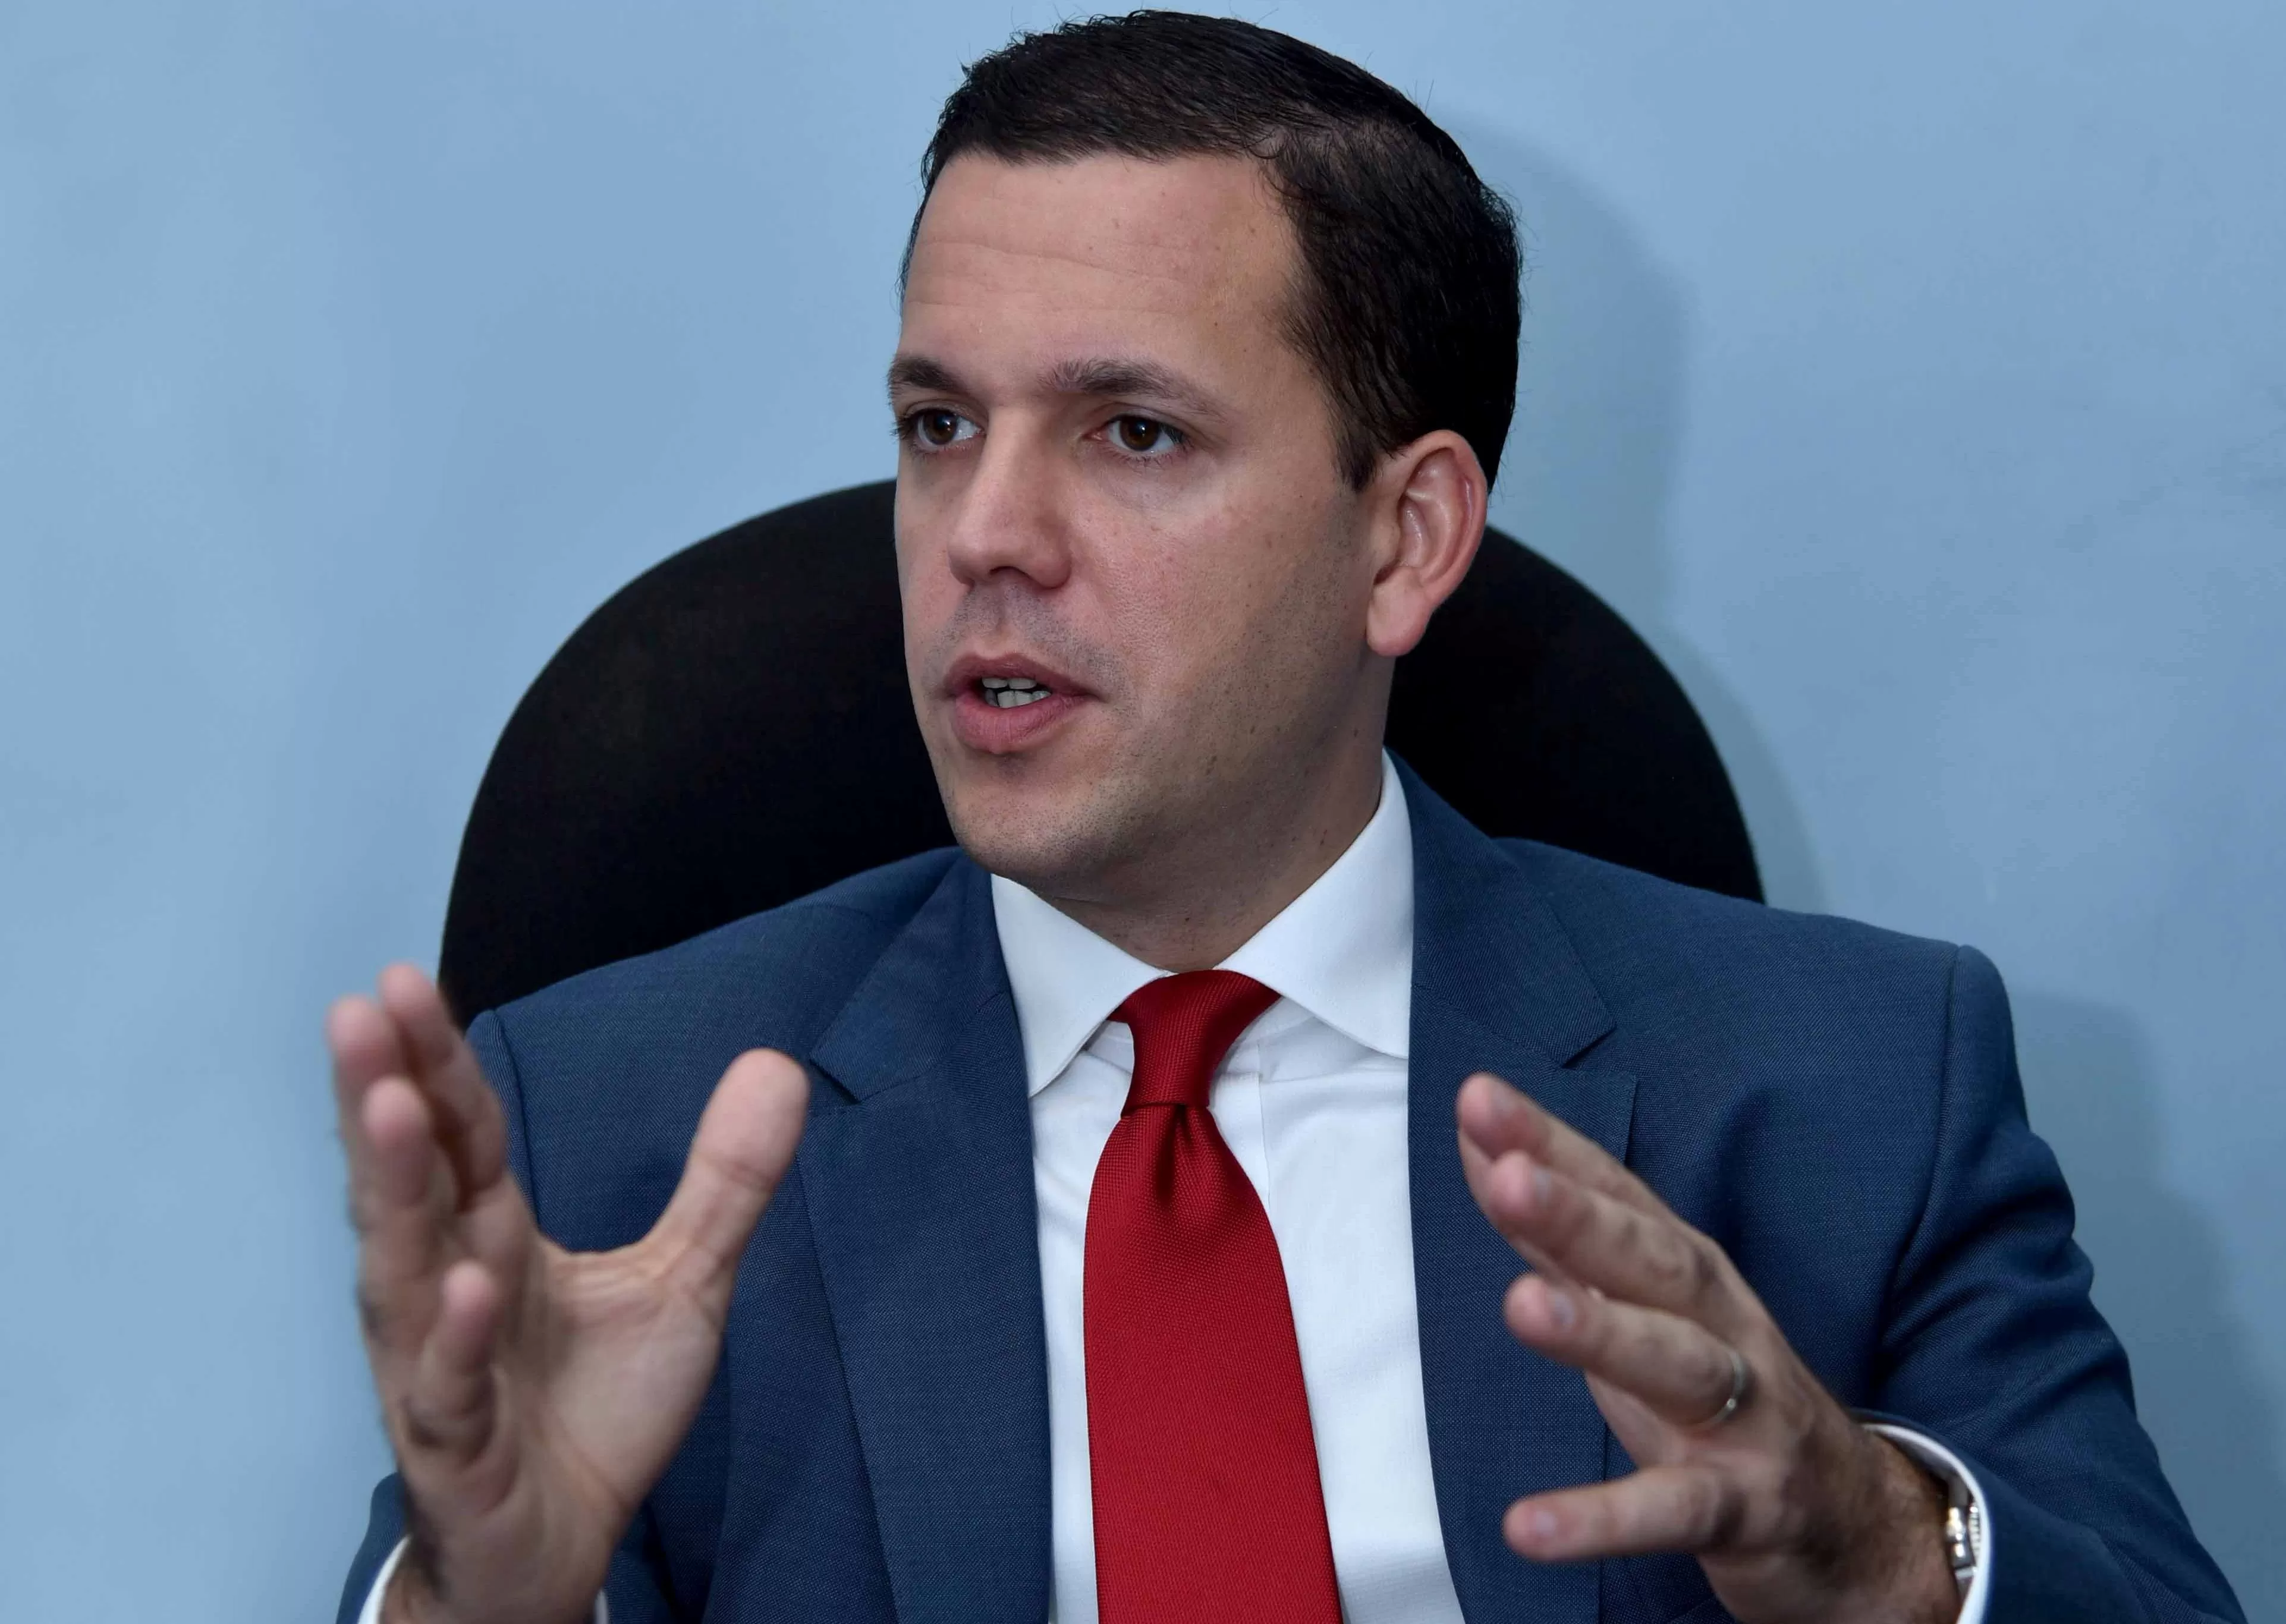 Hugo Beras reitera transparencia en licitación de semáforos y pide a DGCP reconsiderar decisión